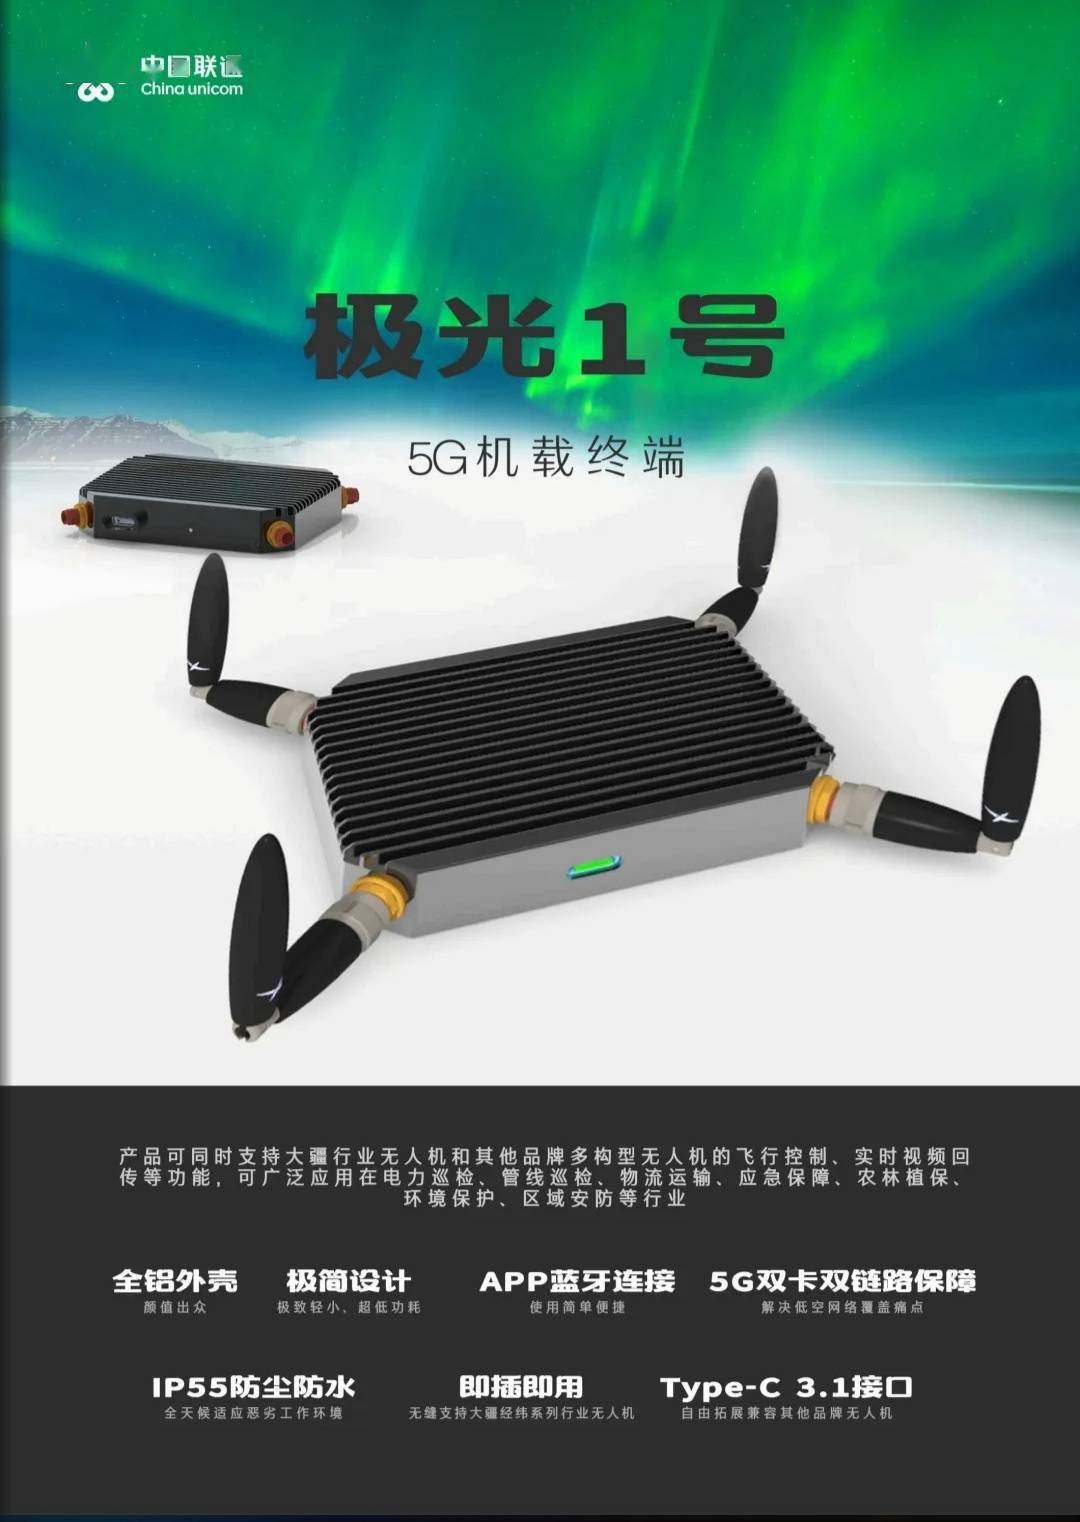 中国联通推出“极光一号”5G机载终端，适配大疆等品牌无人机设备